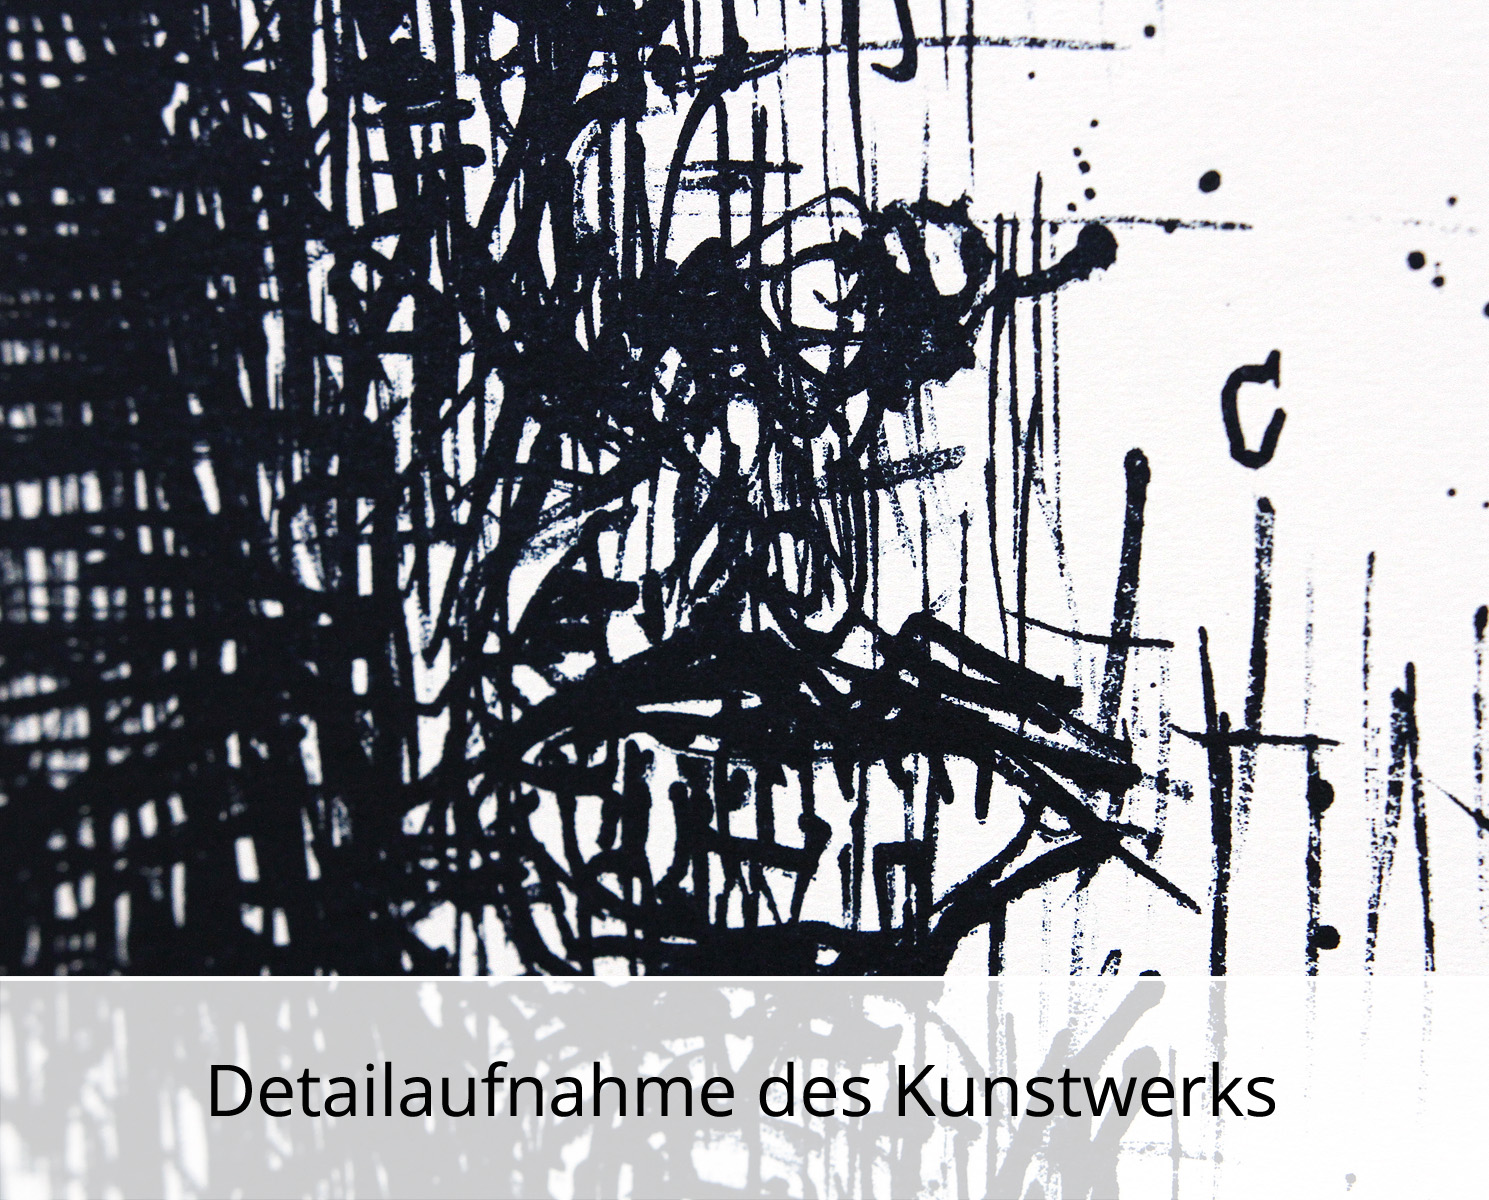 C. Blechschmidt: "Poet", Originale Grafik/Lithographie